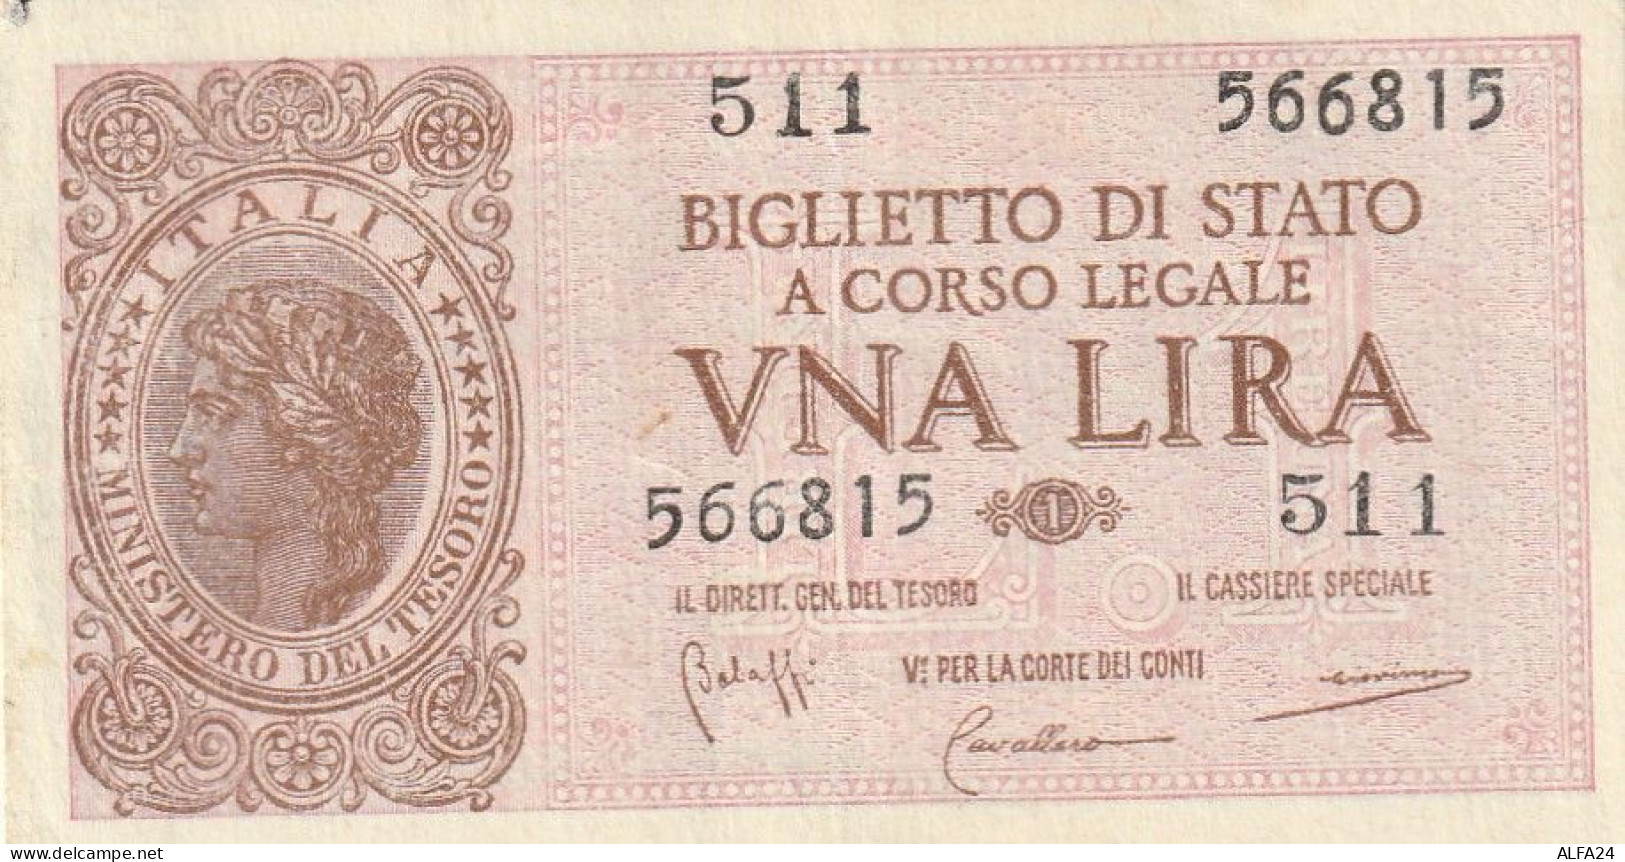 BANCONOTA BIGLIETTO DI STATO ITALIA 1 LIRA UNC  (B_358 - Italia – 1 Lira